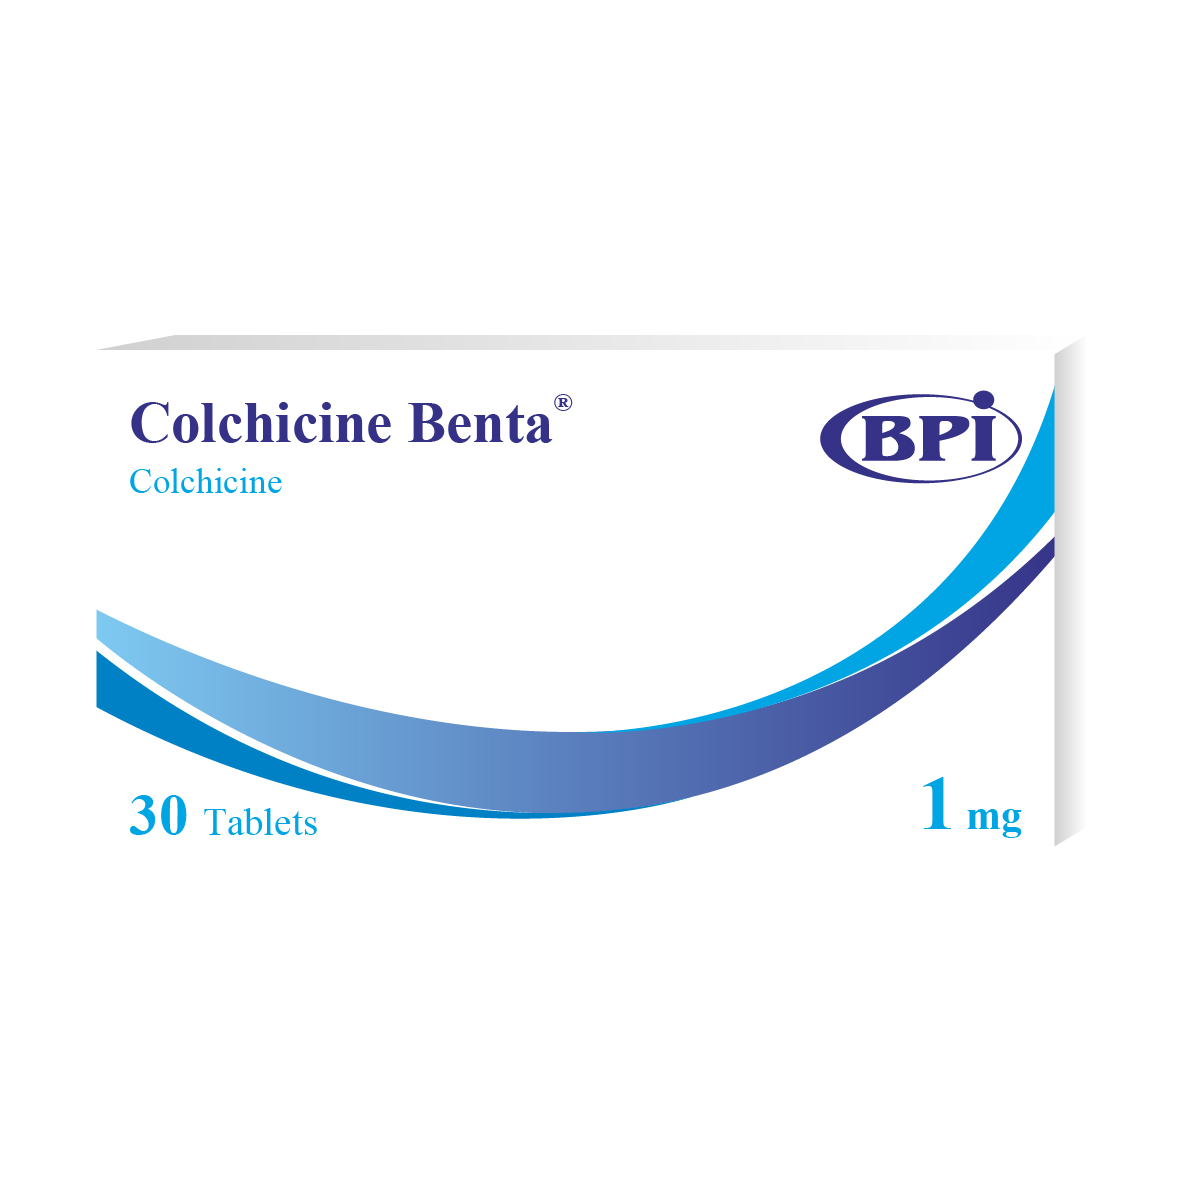 Colchicine Benta